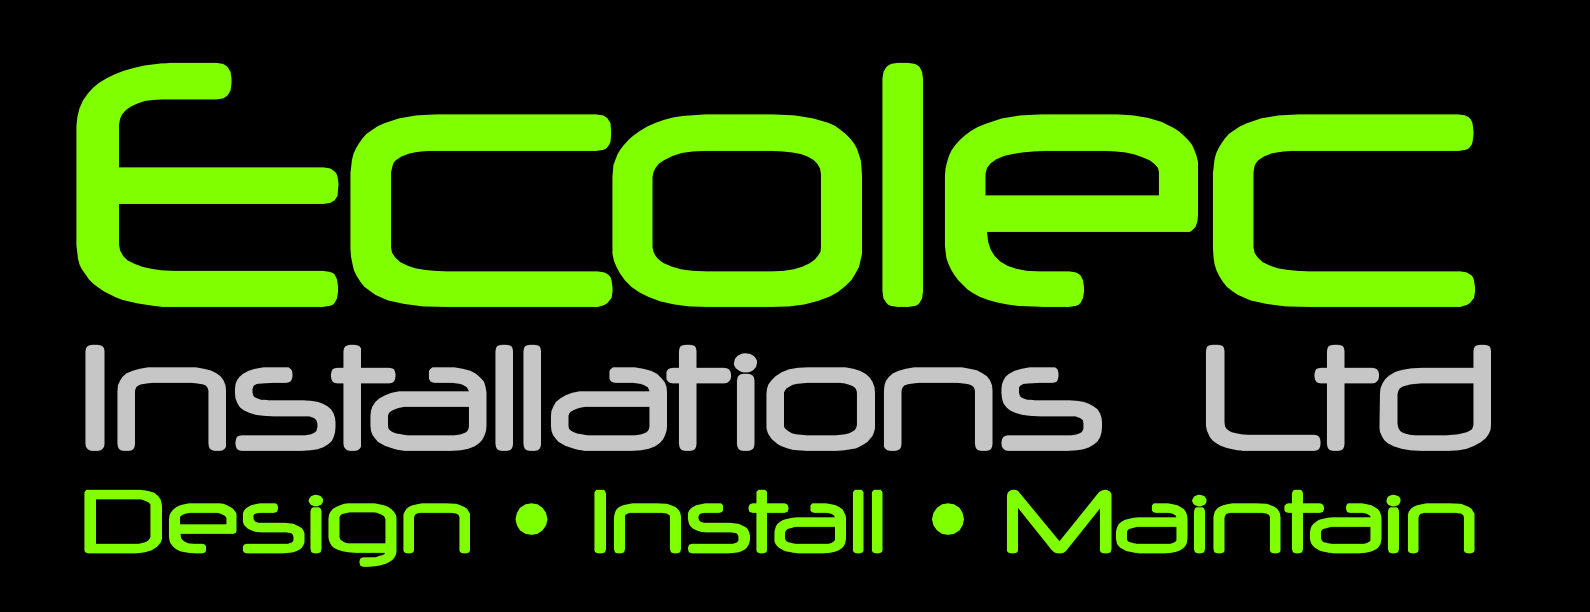 Ecolec Installations Ltd